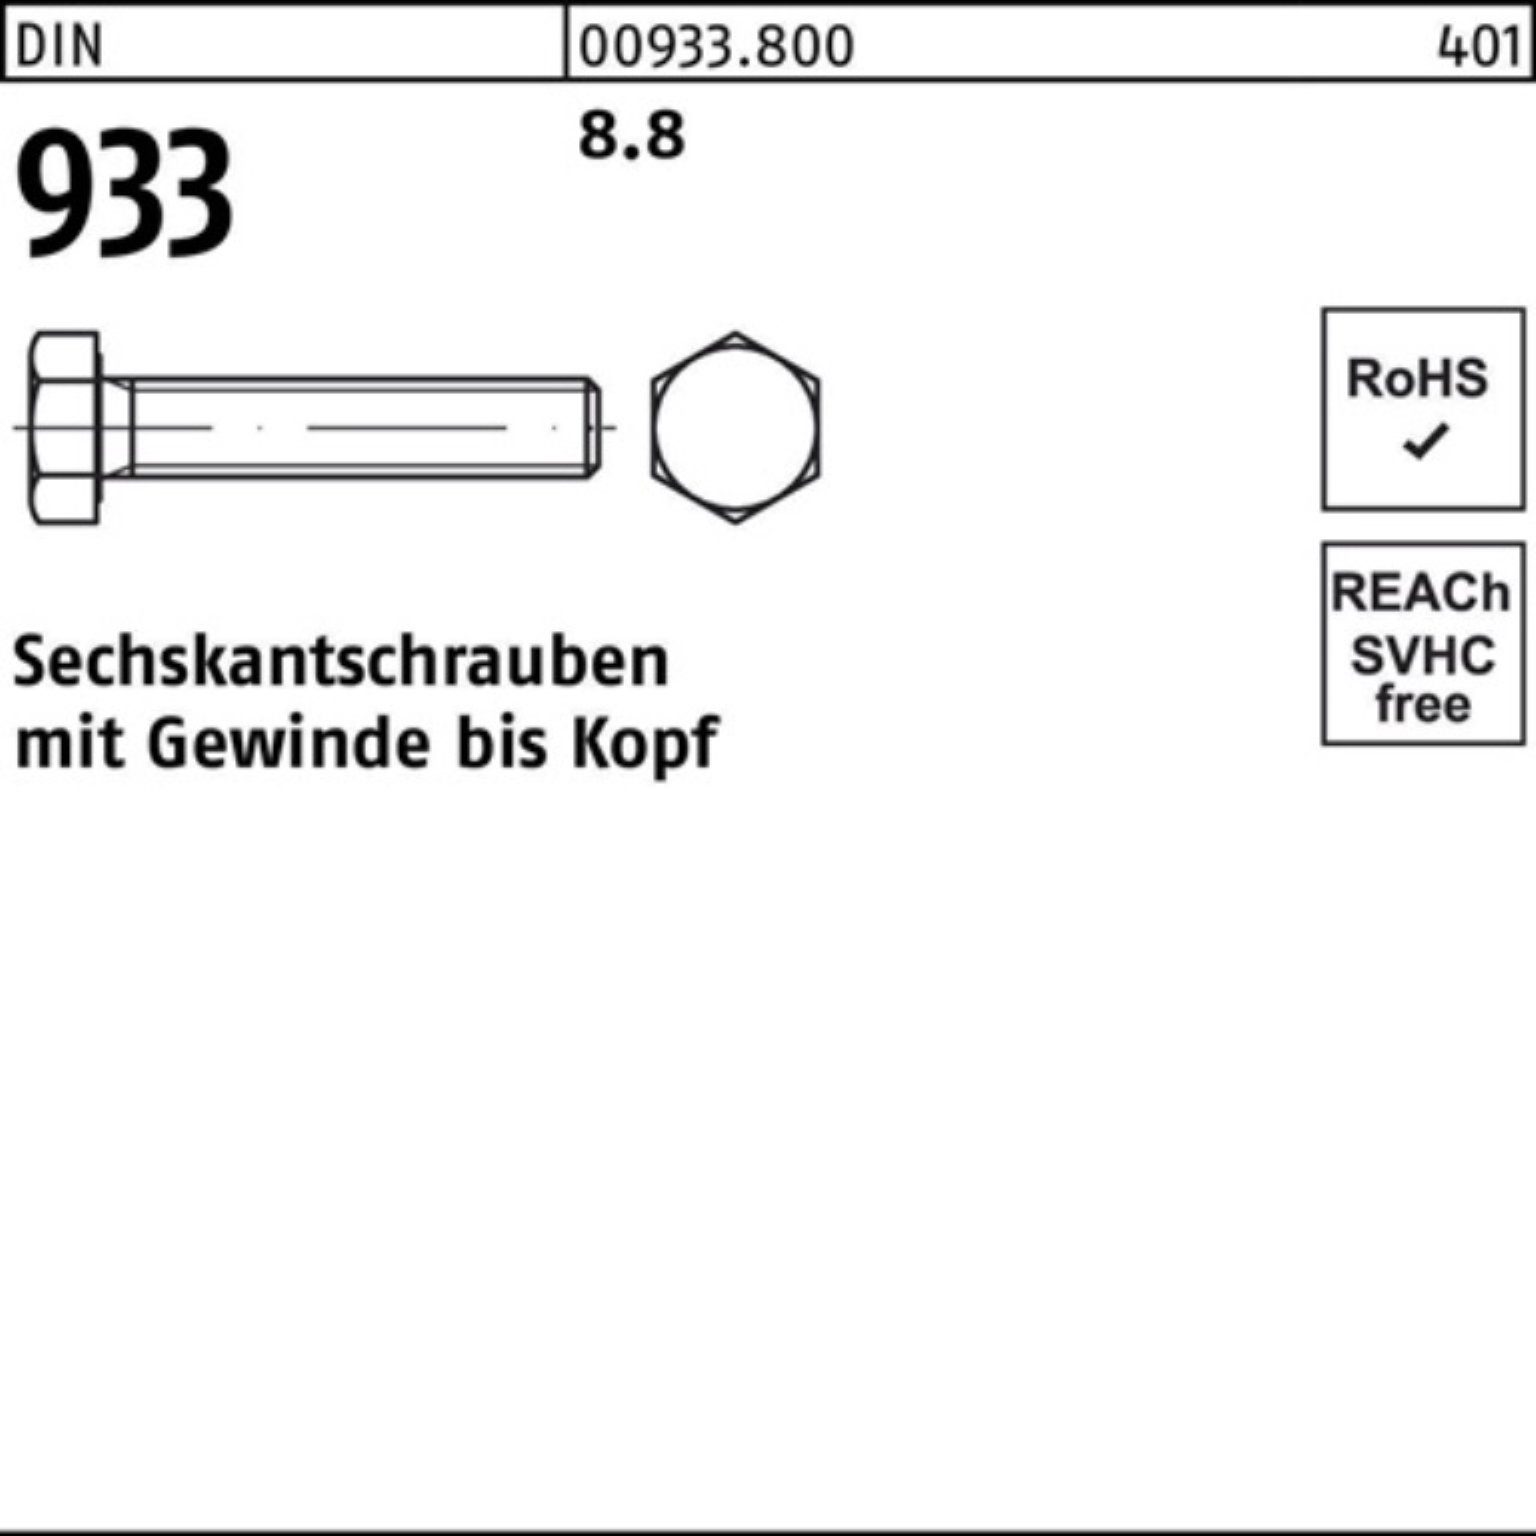 Reyher Sechskantschraube 100er Pack Sechskantschraube 8.8 25 Stück 933 170 933 DIN VG DIN M14x